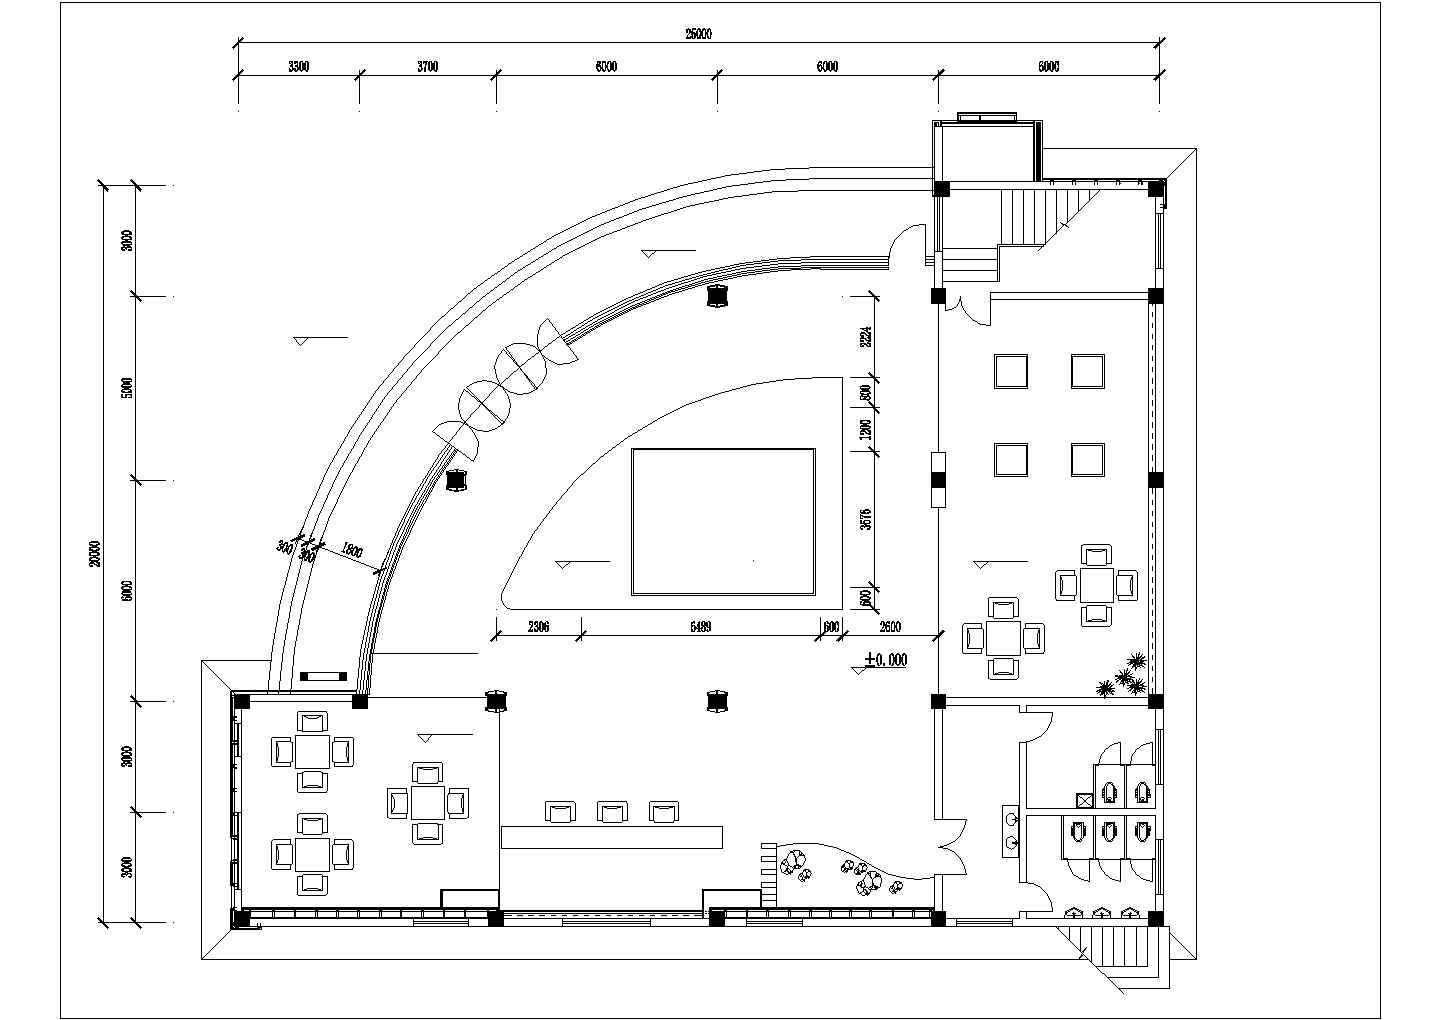 南昌市桔园花园小区2层售楼部室内外装修设计CAD图纸